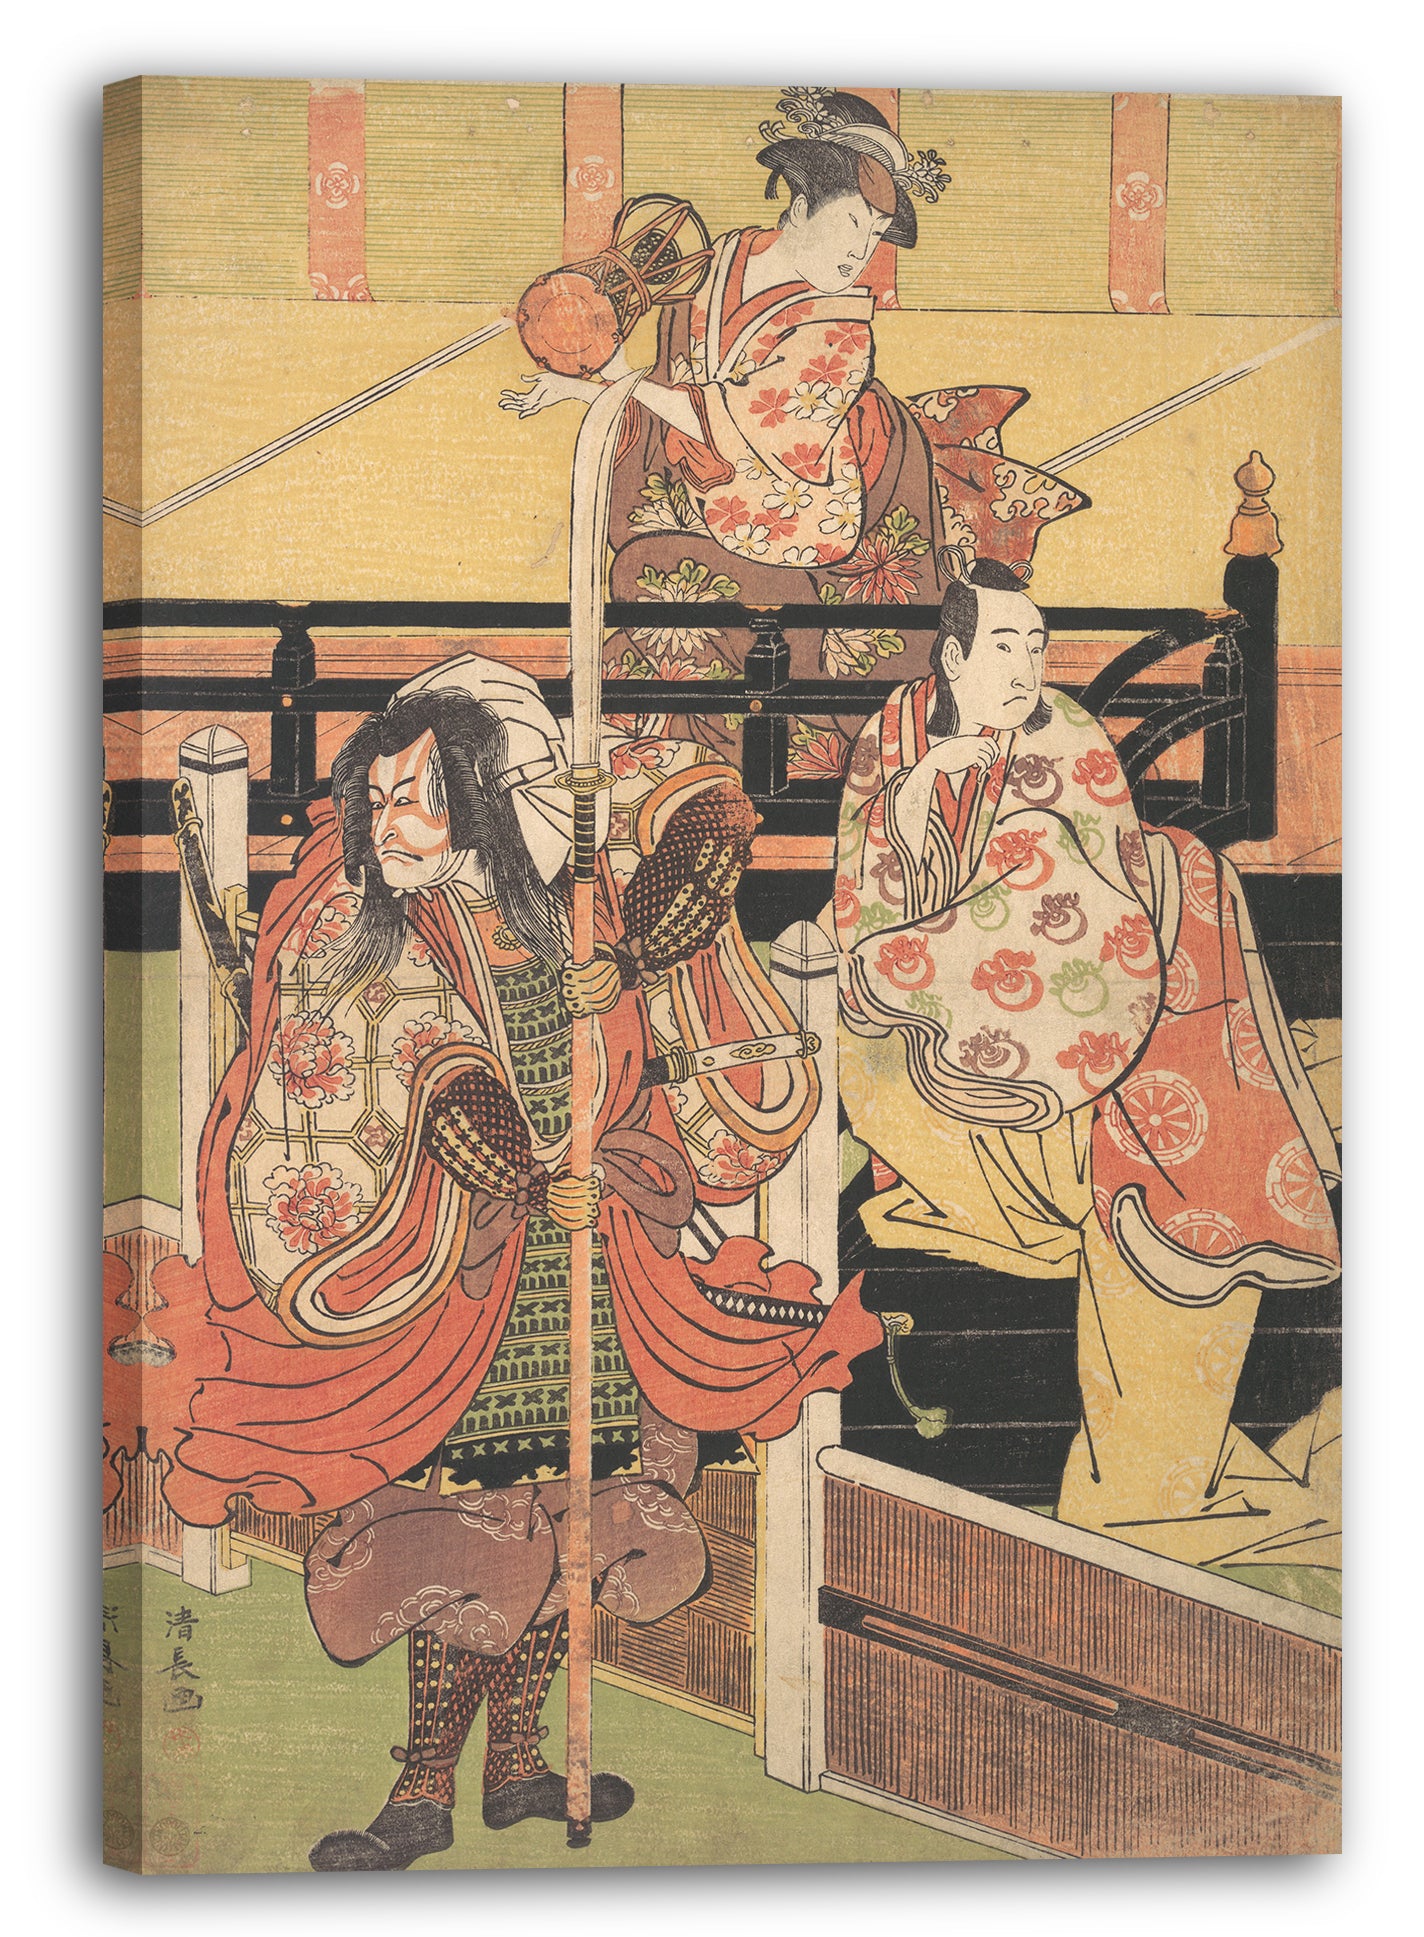 Leinwandbild Torii Kiyonaga - Auf einem Balkon sitzt eine Frau, die einen Tsuzumi spielt, unten sitzt ein Mann im Daimyo-Kostüm auf einer schwarzen Lackkiste